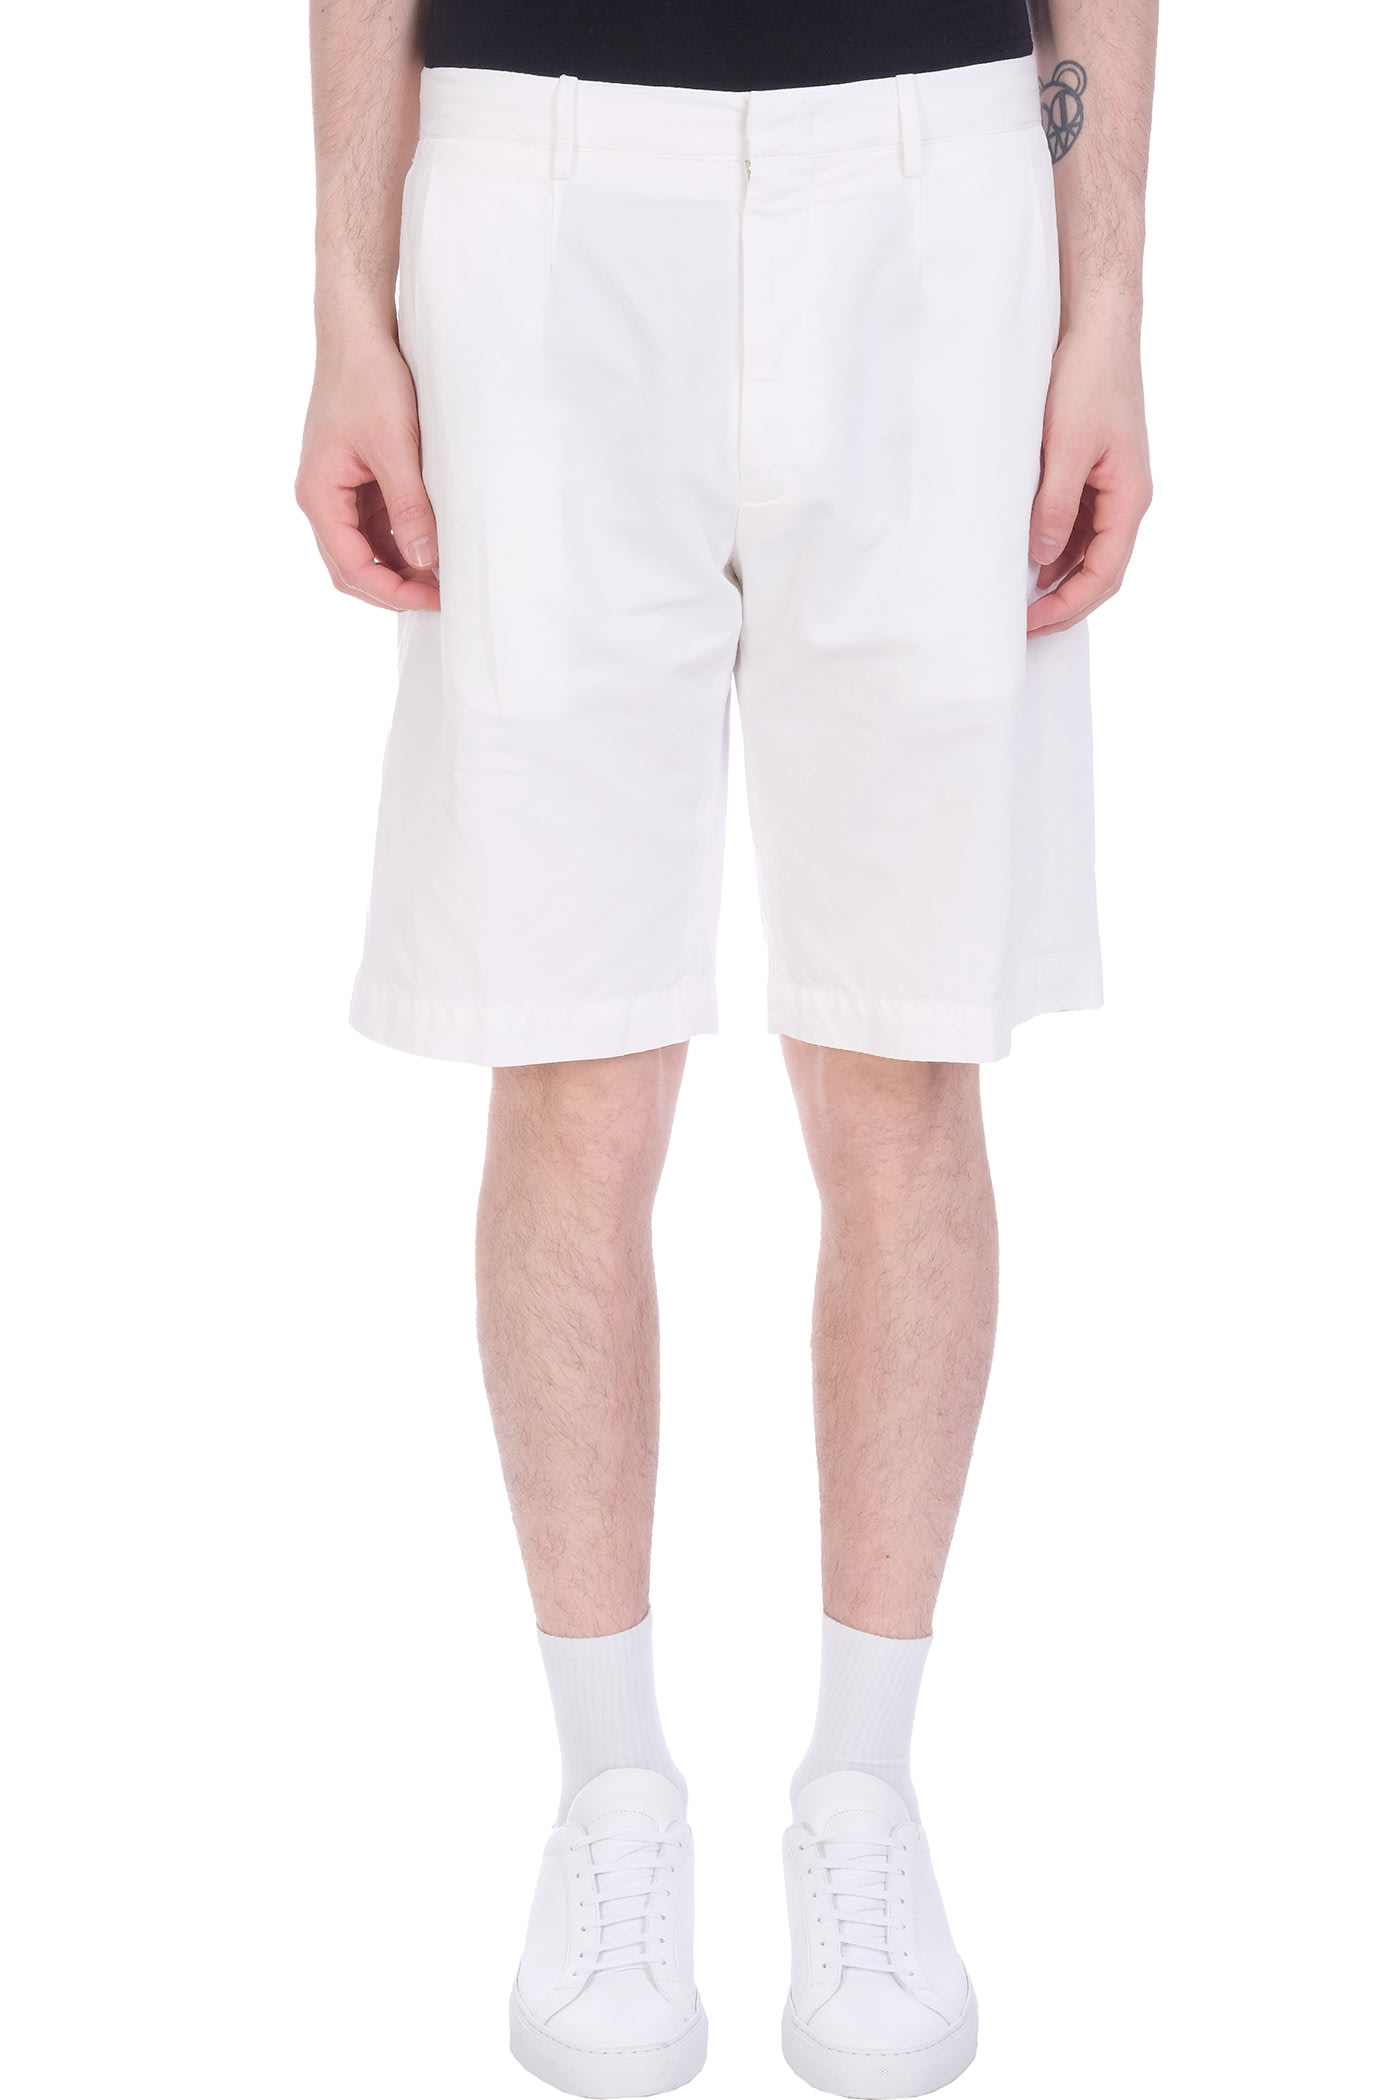 Ermenegildo Zegna Shorts In White Cotton And Linen